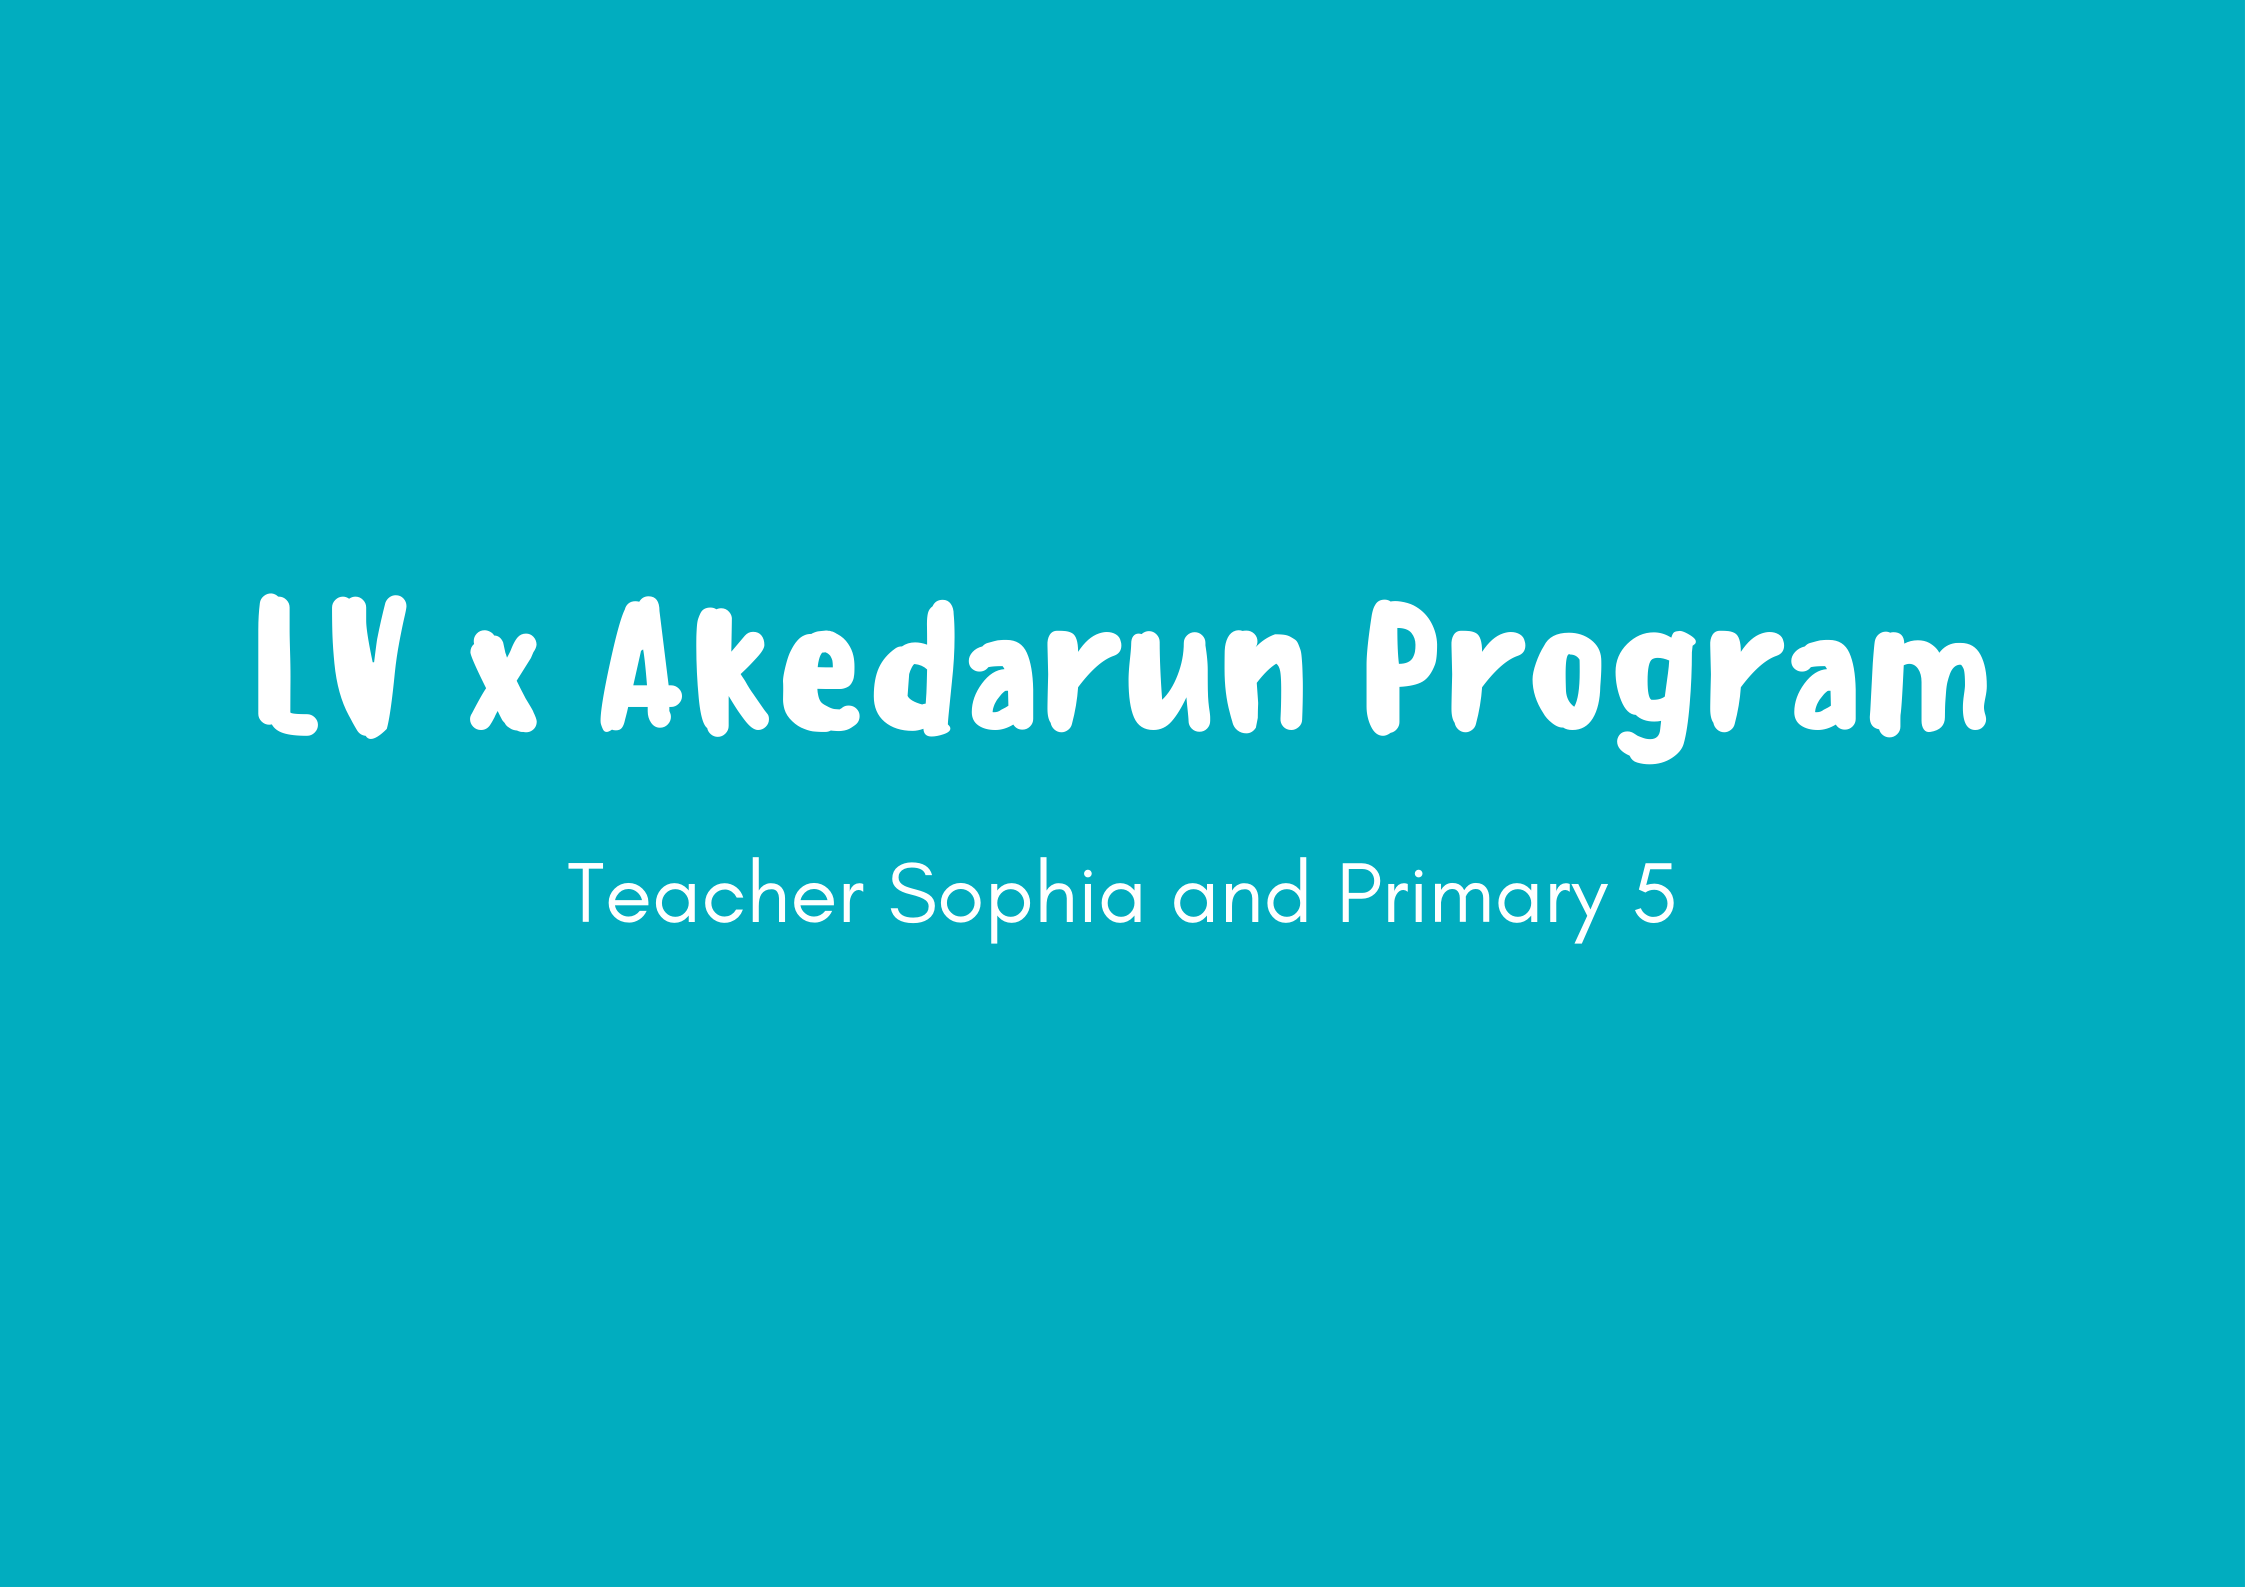 1477-lv-x-akedarun-program.png